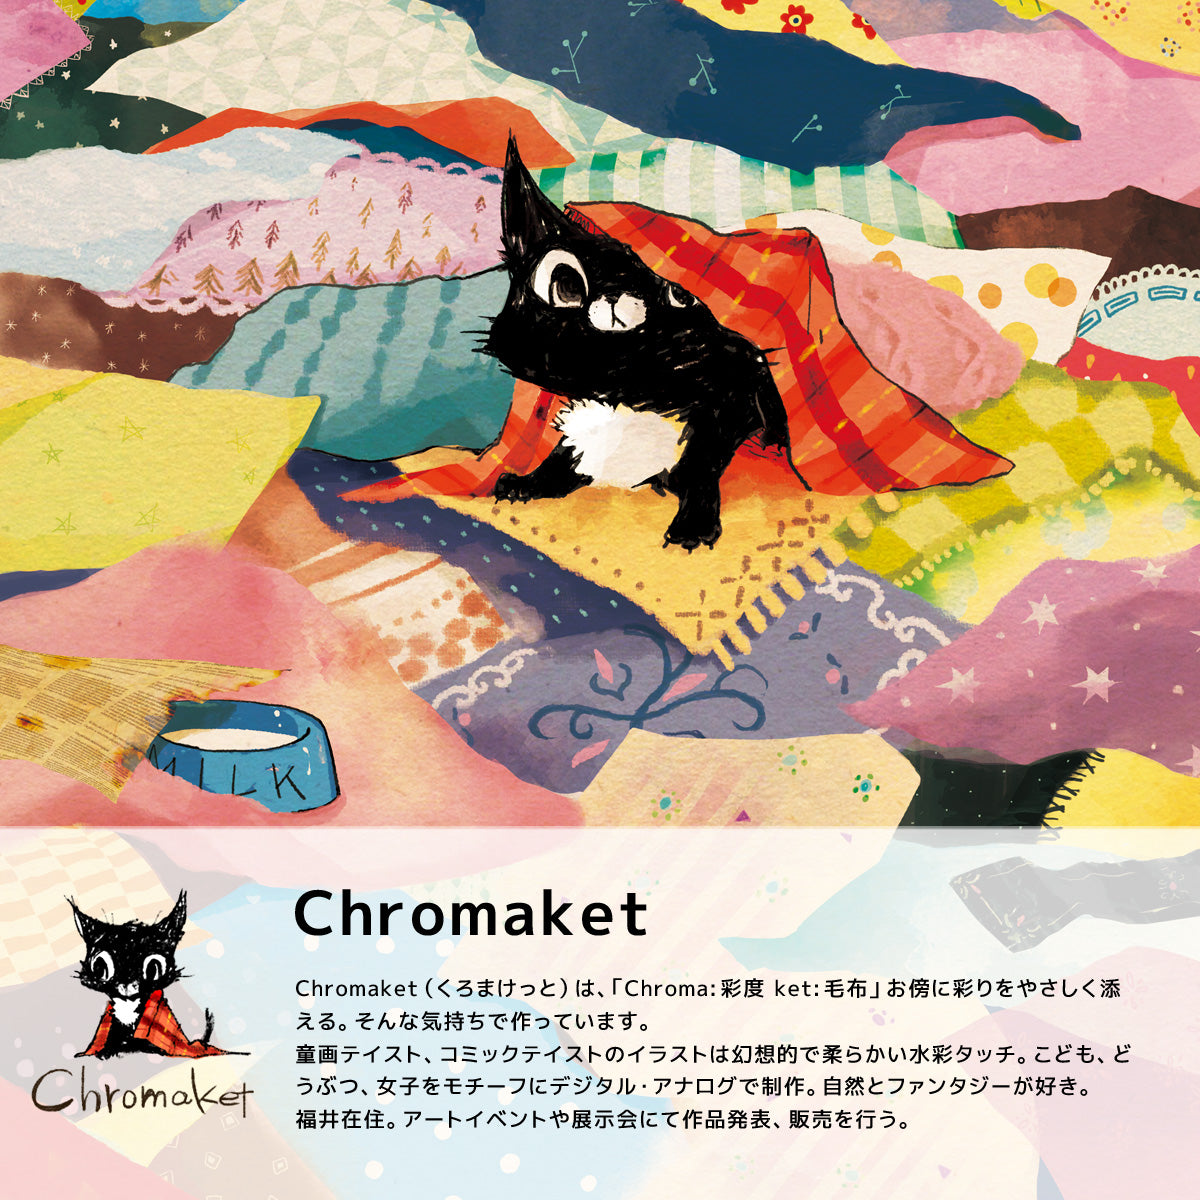 仁子デザイン、ChromaketブランドのiPad クリアケース